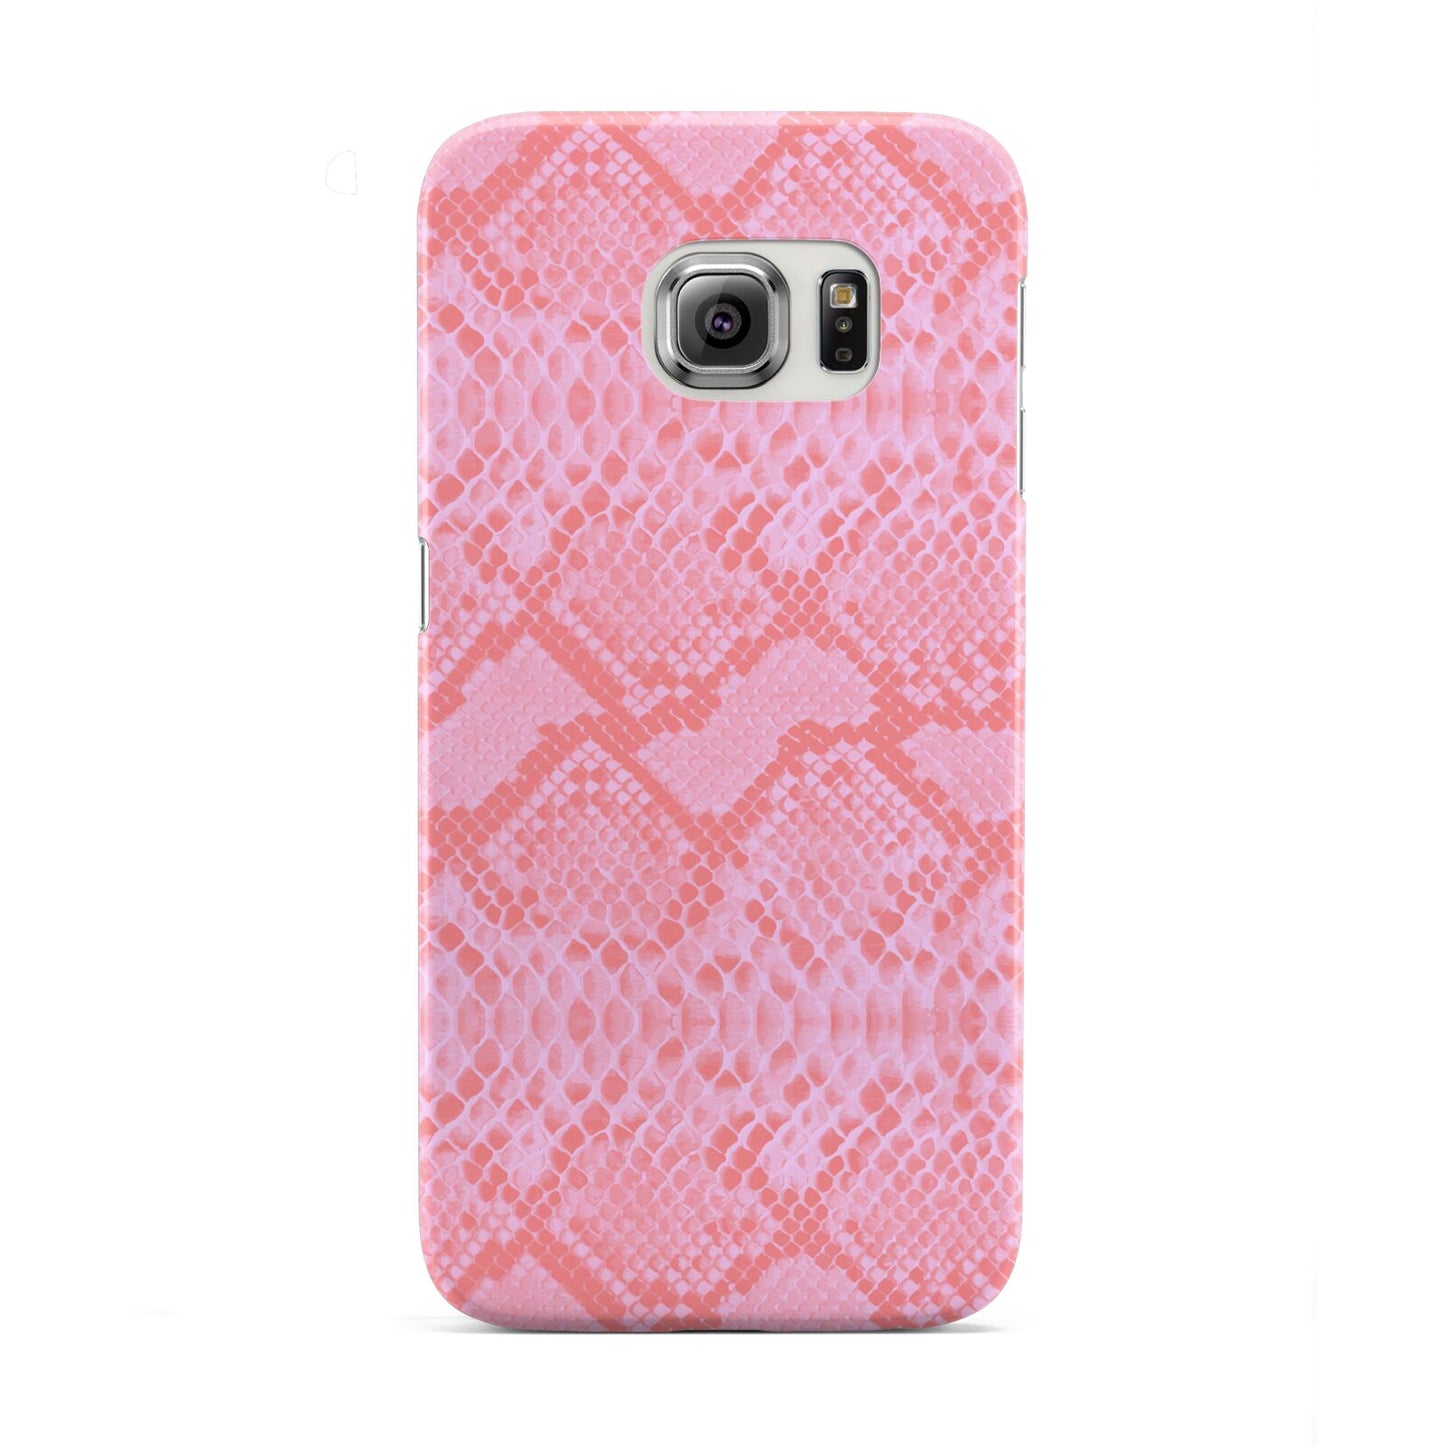 Pink Snakeskin Samsung Galaxy S6 Edge Case